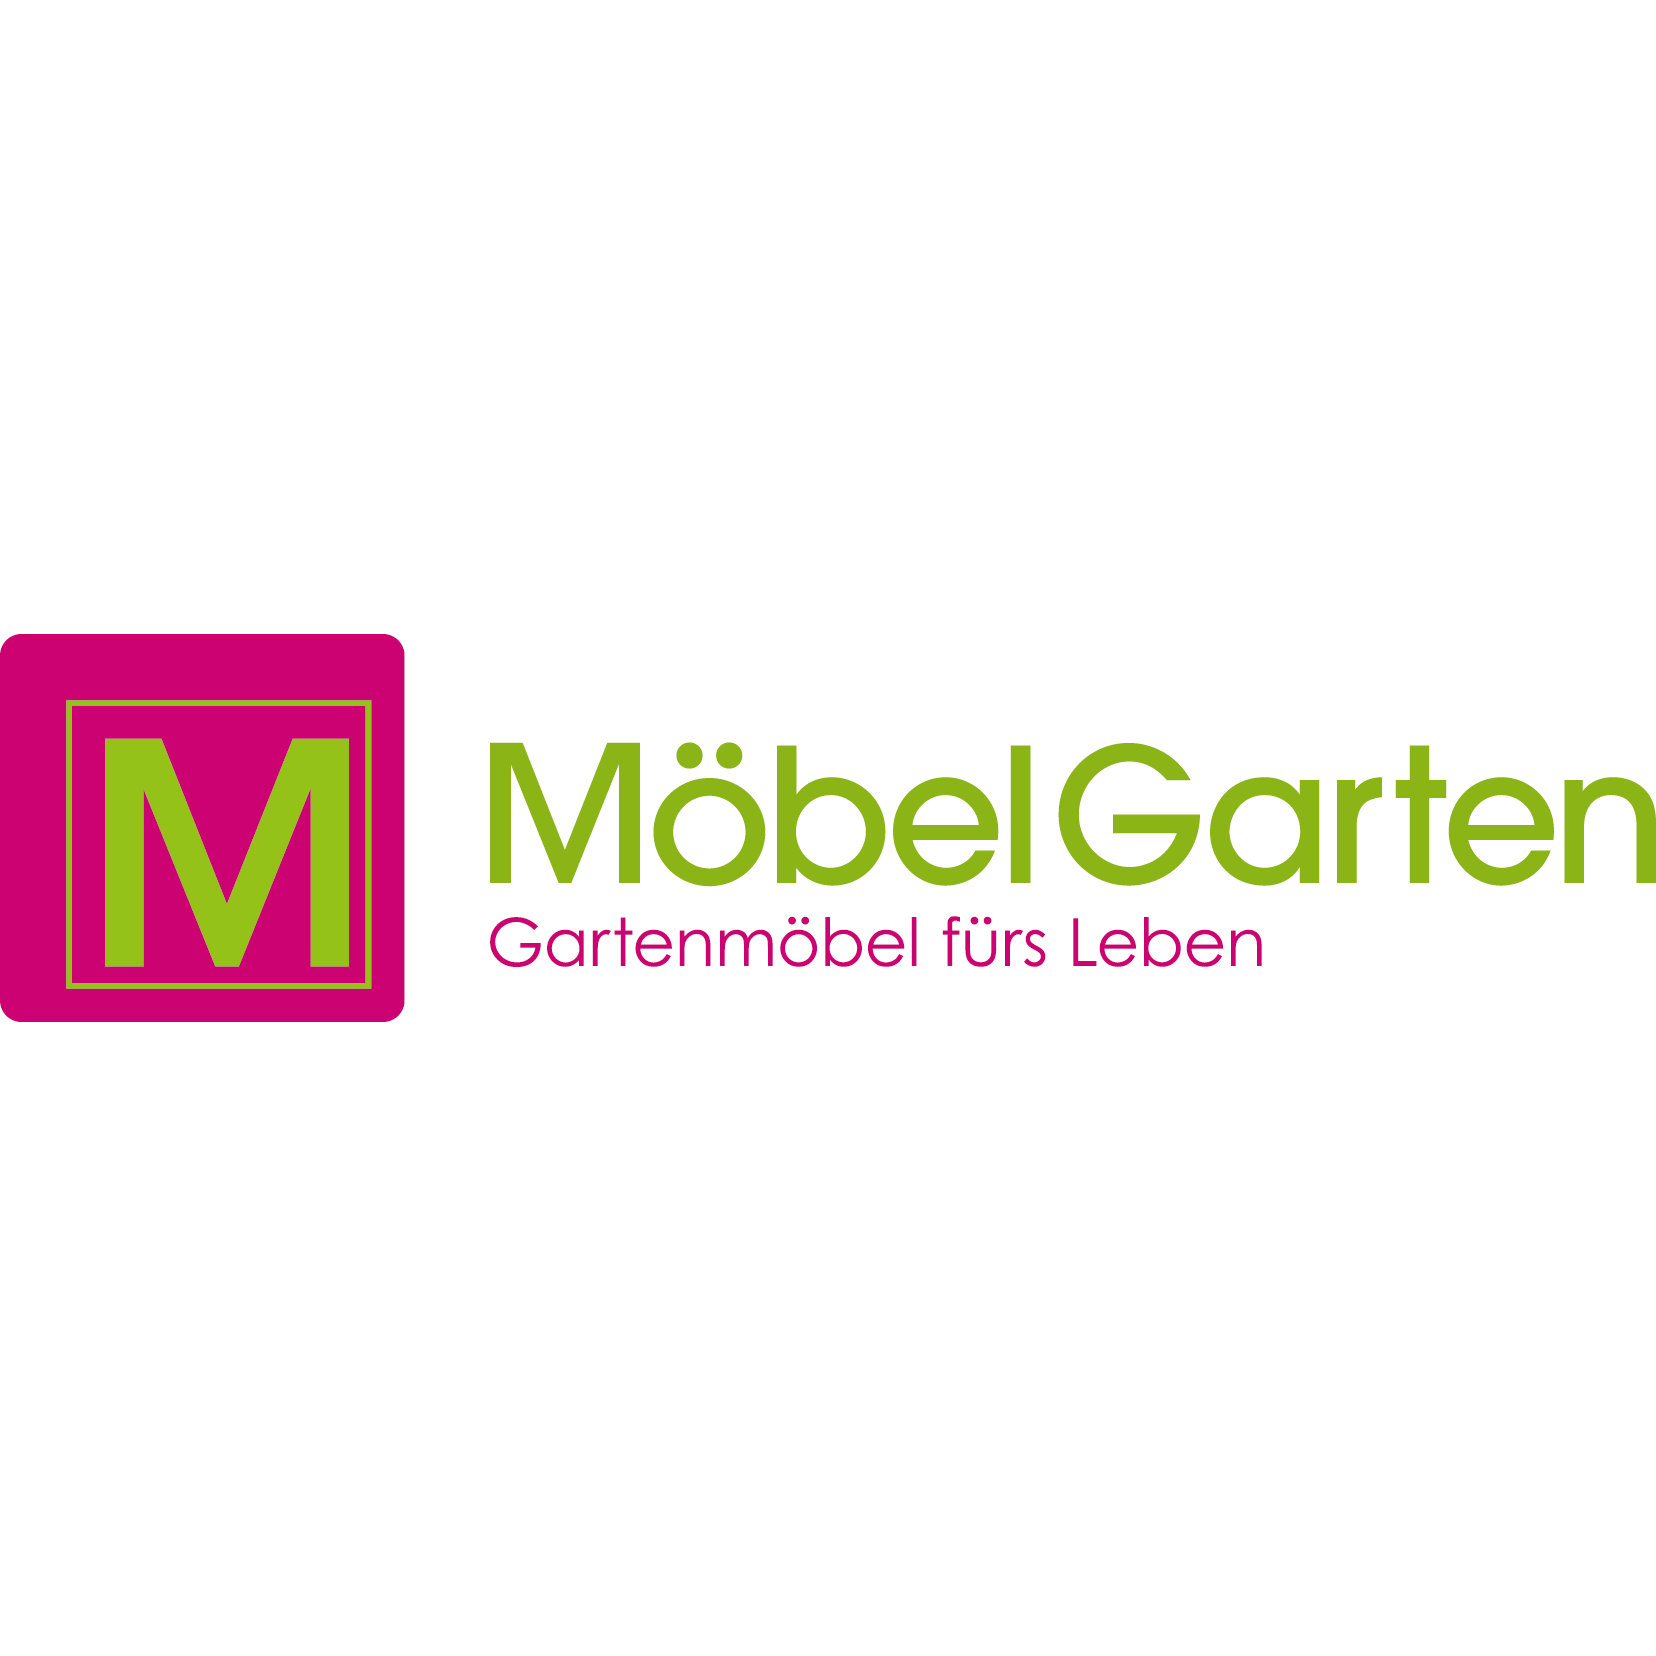 MöbelGarten GmbH - Gartenmöbel fürs Leben in Lindau am Bodensee - Logo